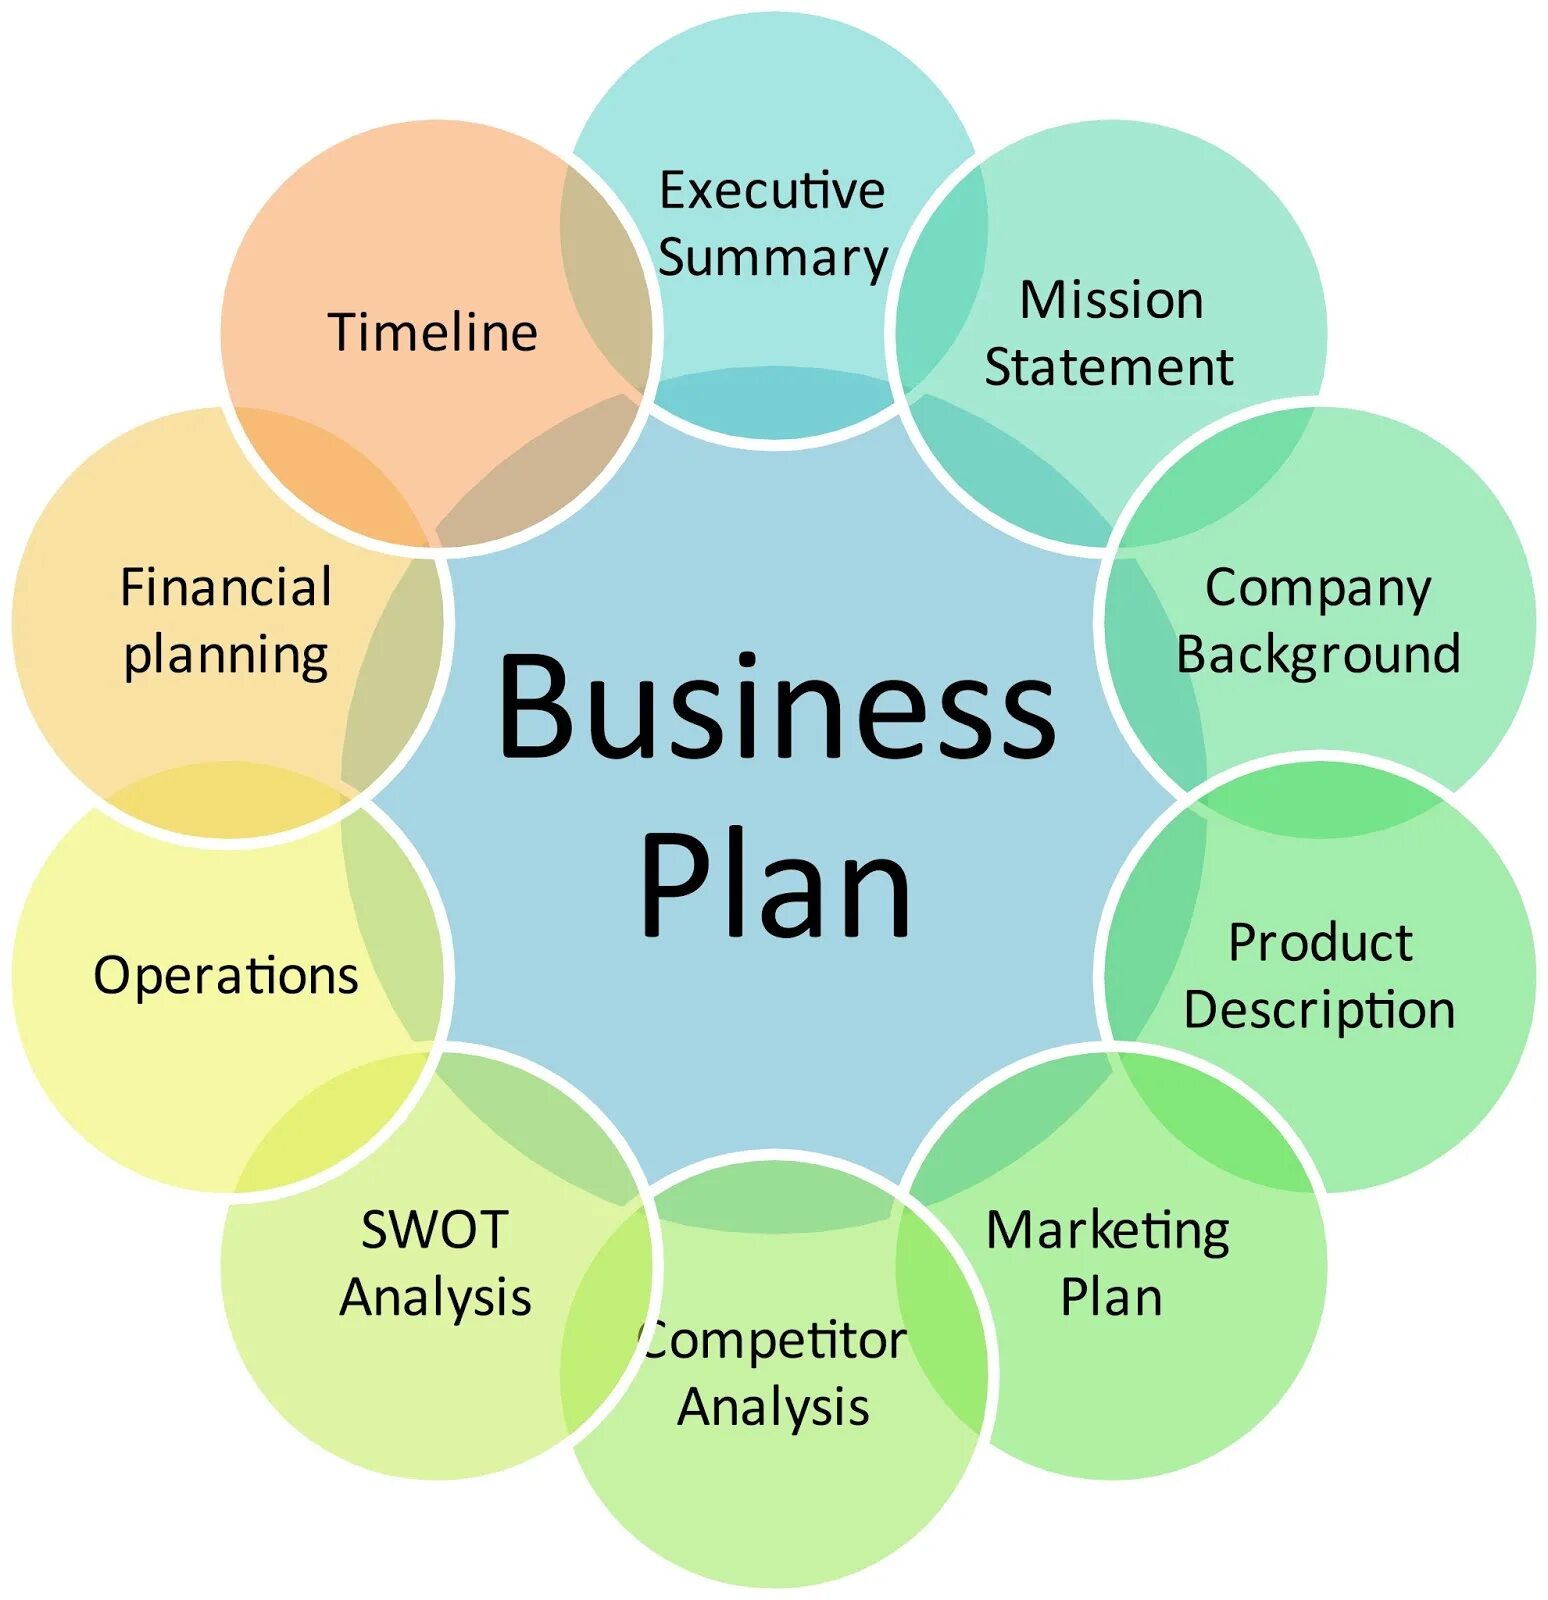 Management topics. Маркетинг. Инструменты цифрового маркетинга. Бизнес-планирование. Структура цифрового маркетинга.